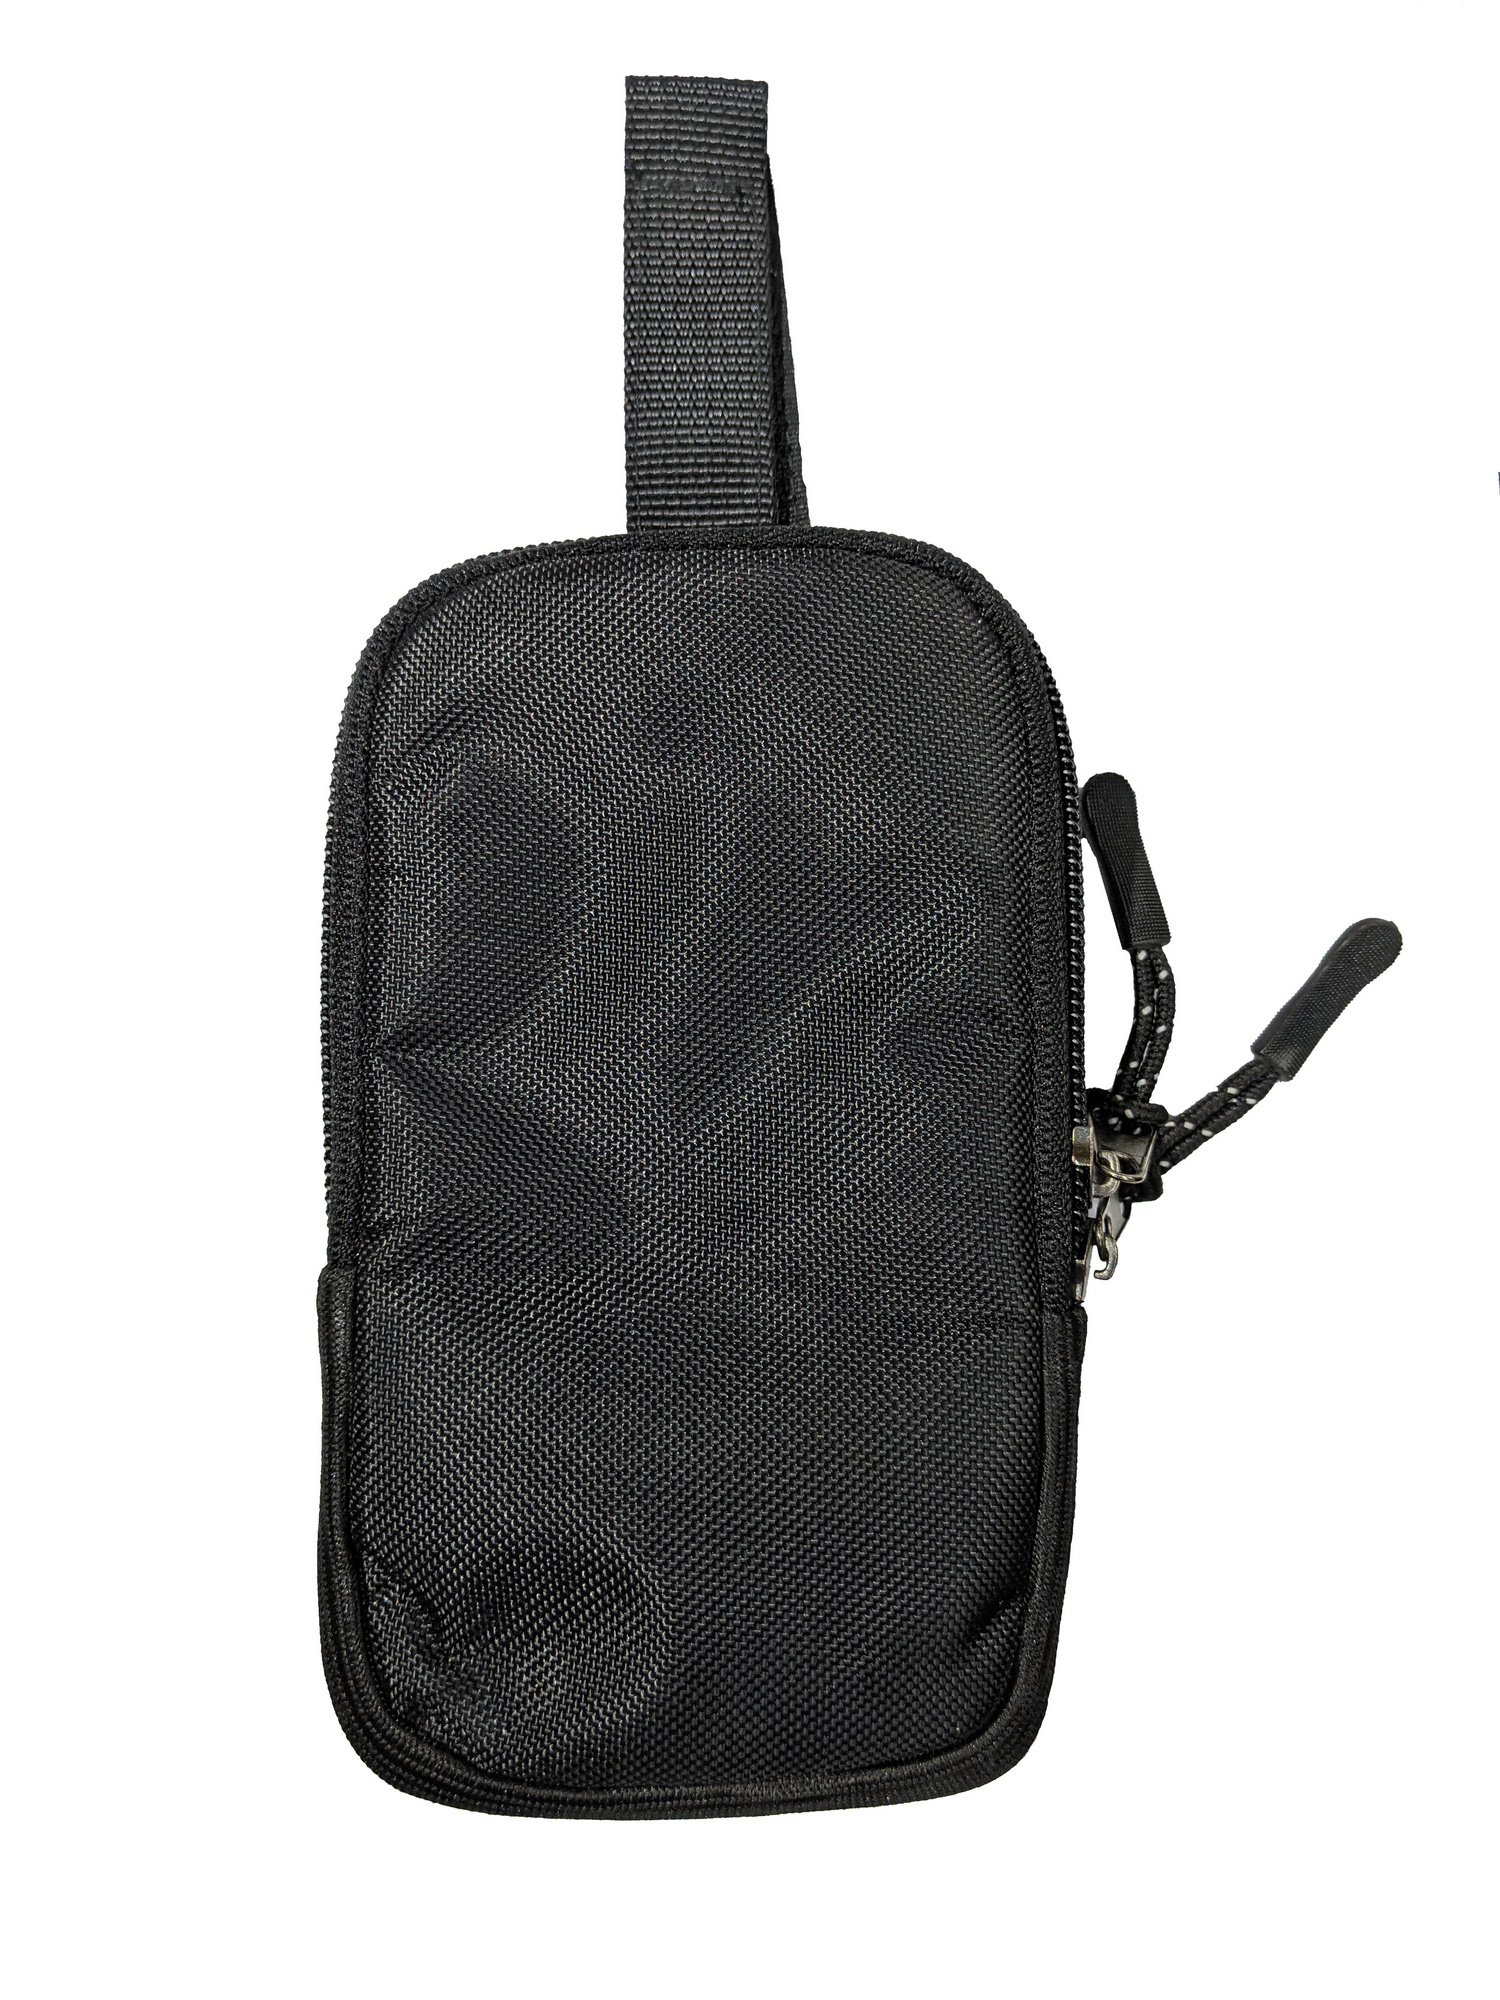 Сумка для телефона на рюкзак, черная М фото 